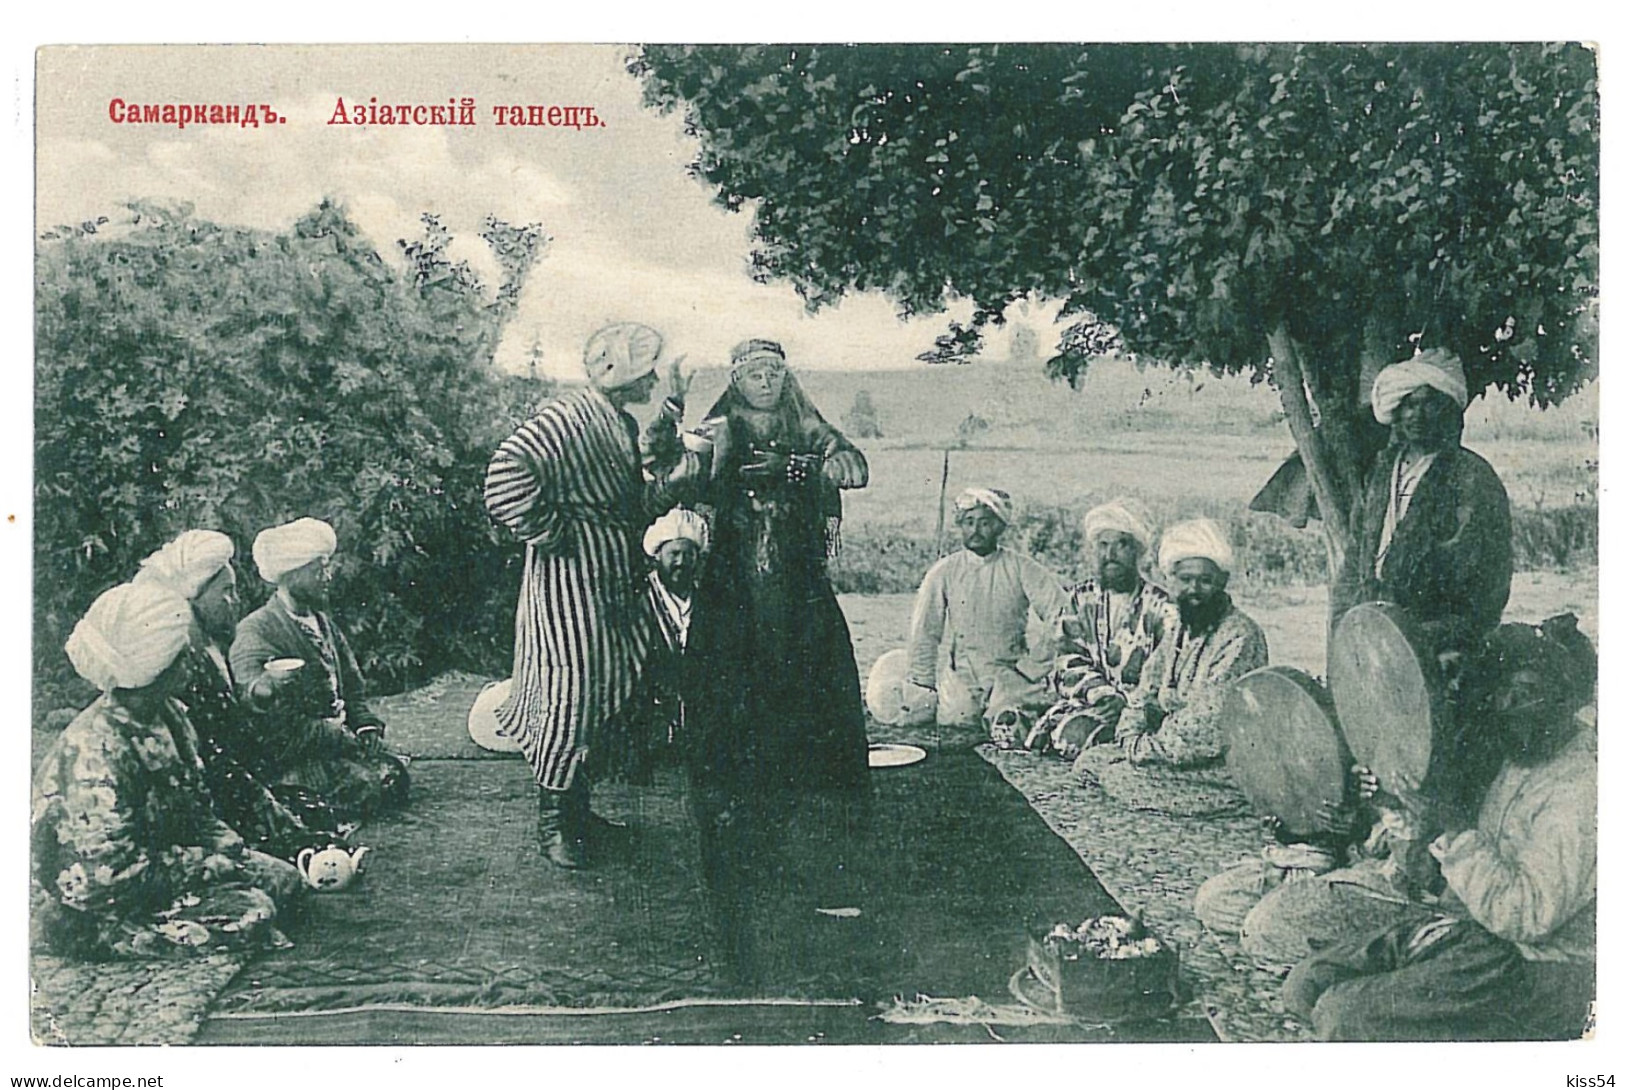 U 13 - 10100 SAMARKAND, Uzbekistan, Ethnics - Old Postcard - Unused - Ouzbékistan